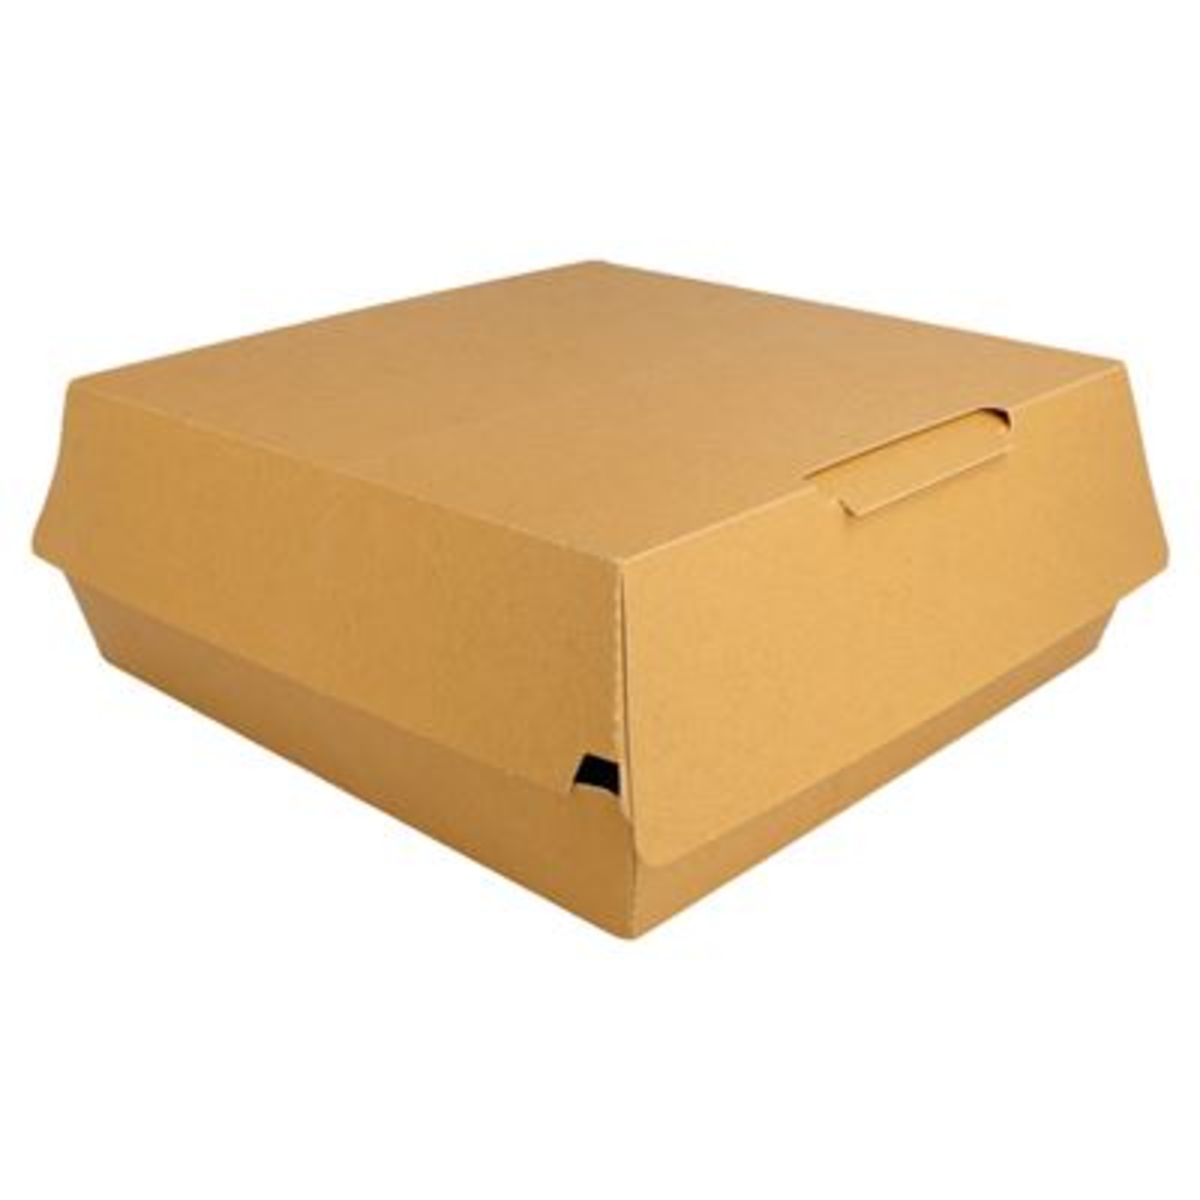 Boîte lunch box Large carton marron 9 x 24 x 23.5 cm x 200 Garcia de Pou - 222.93